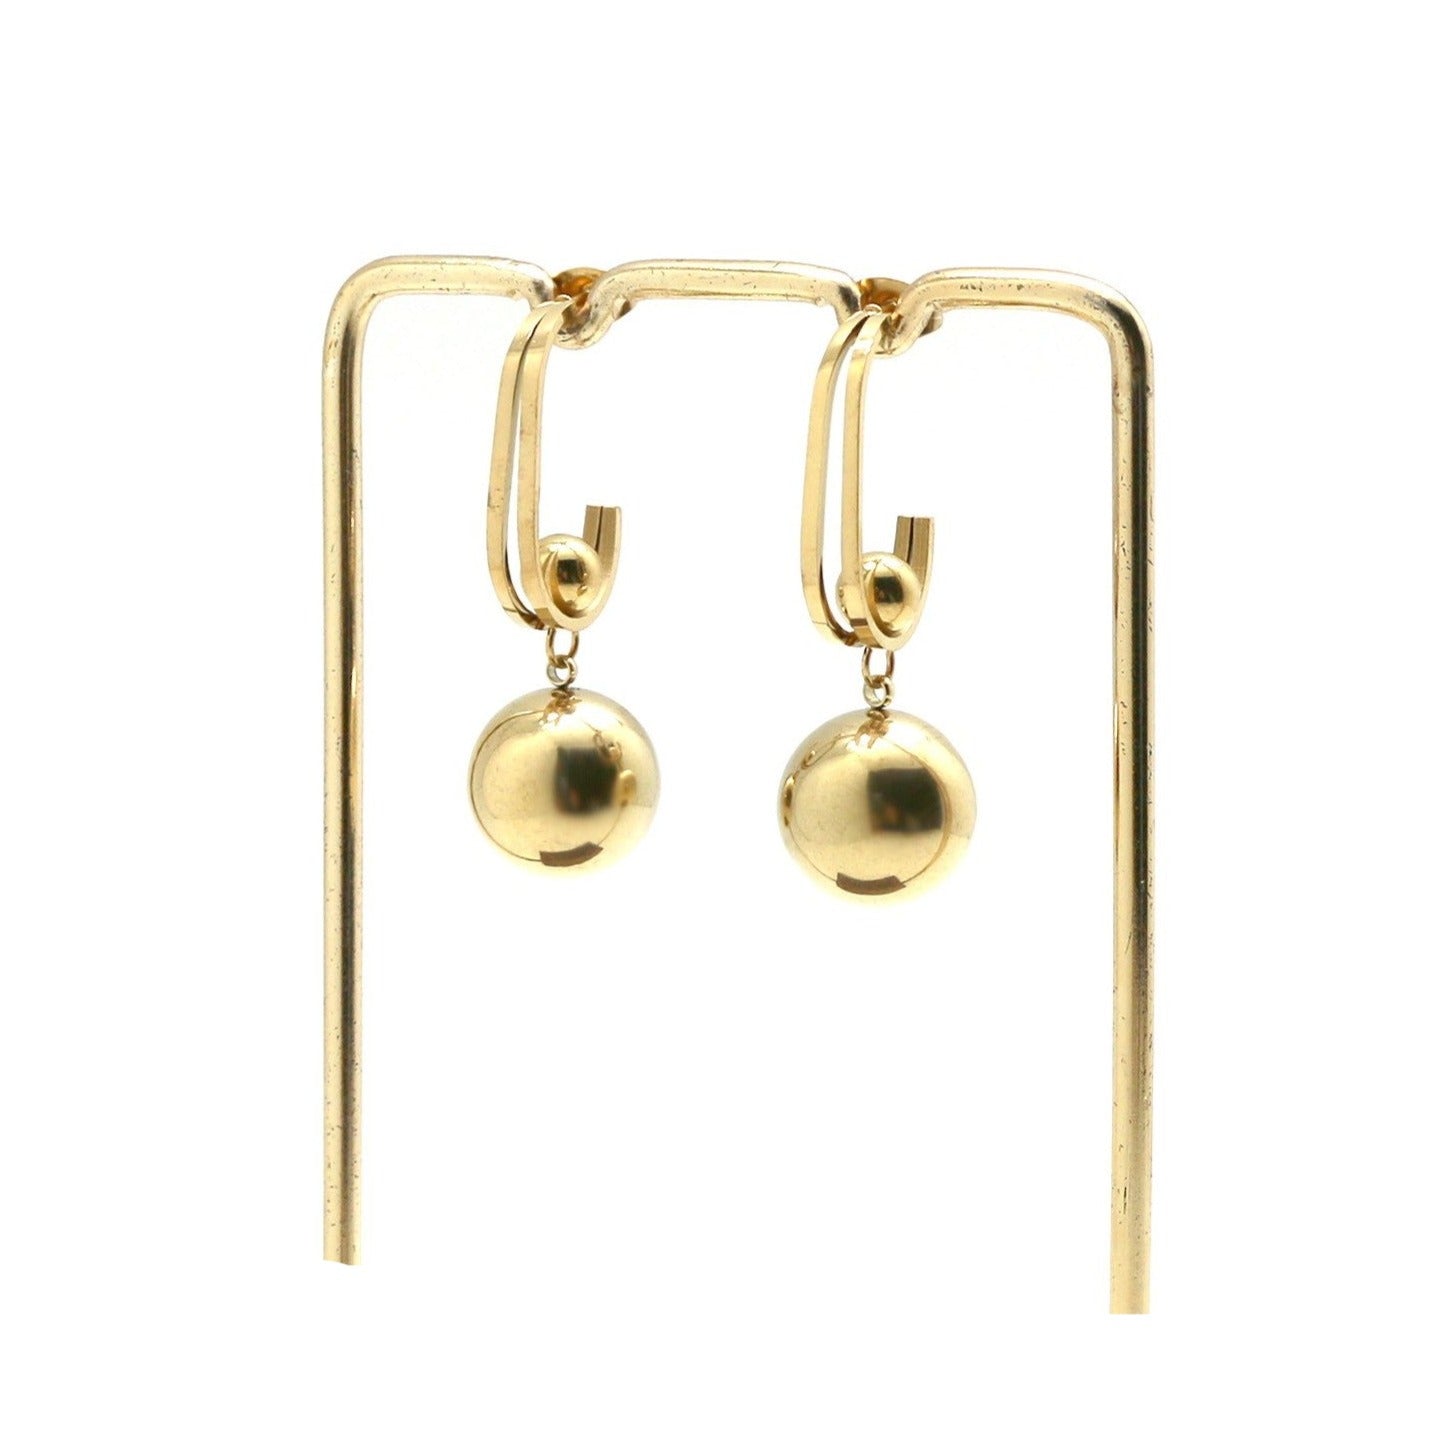 Ball hoop earrings